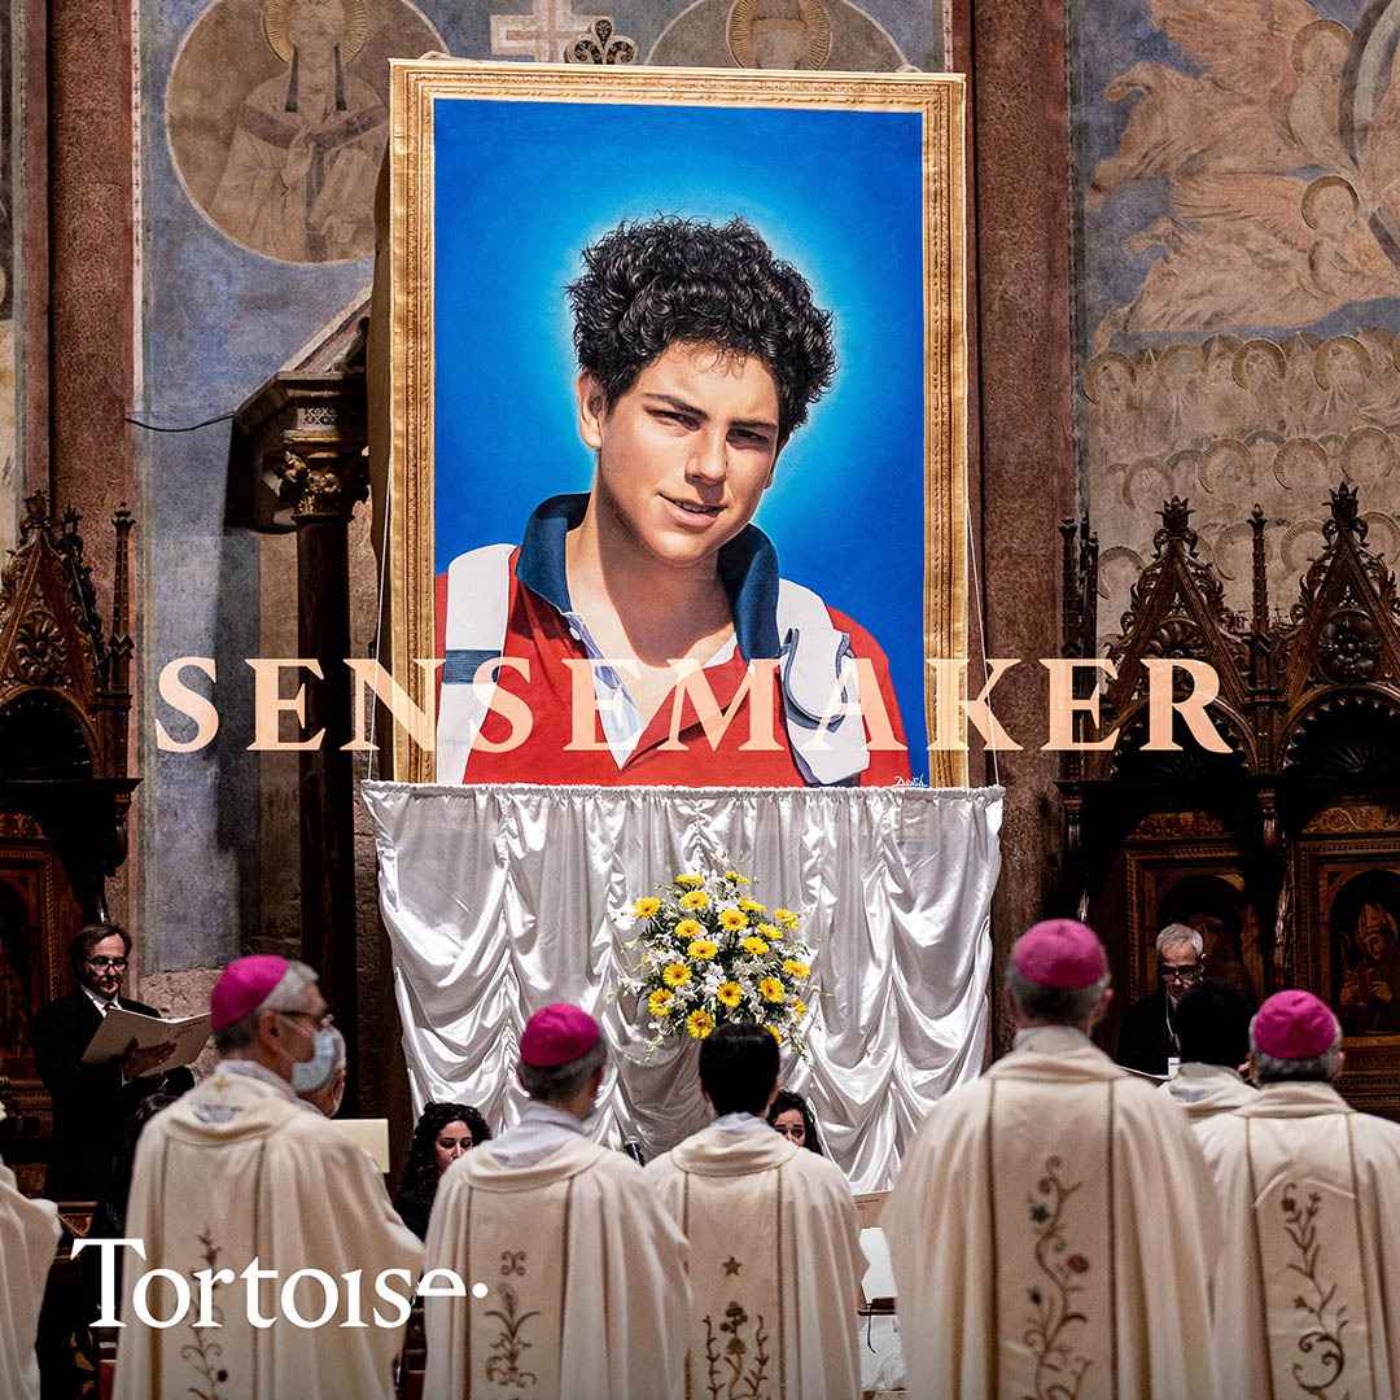 Sensemaker: The First Millennial Saint